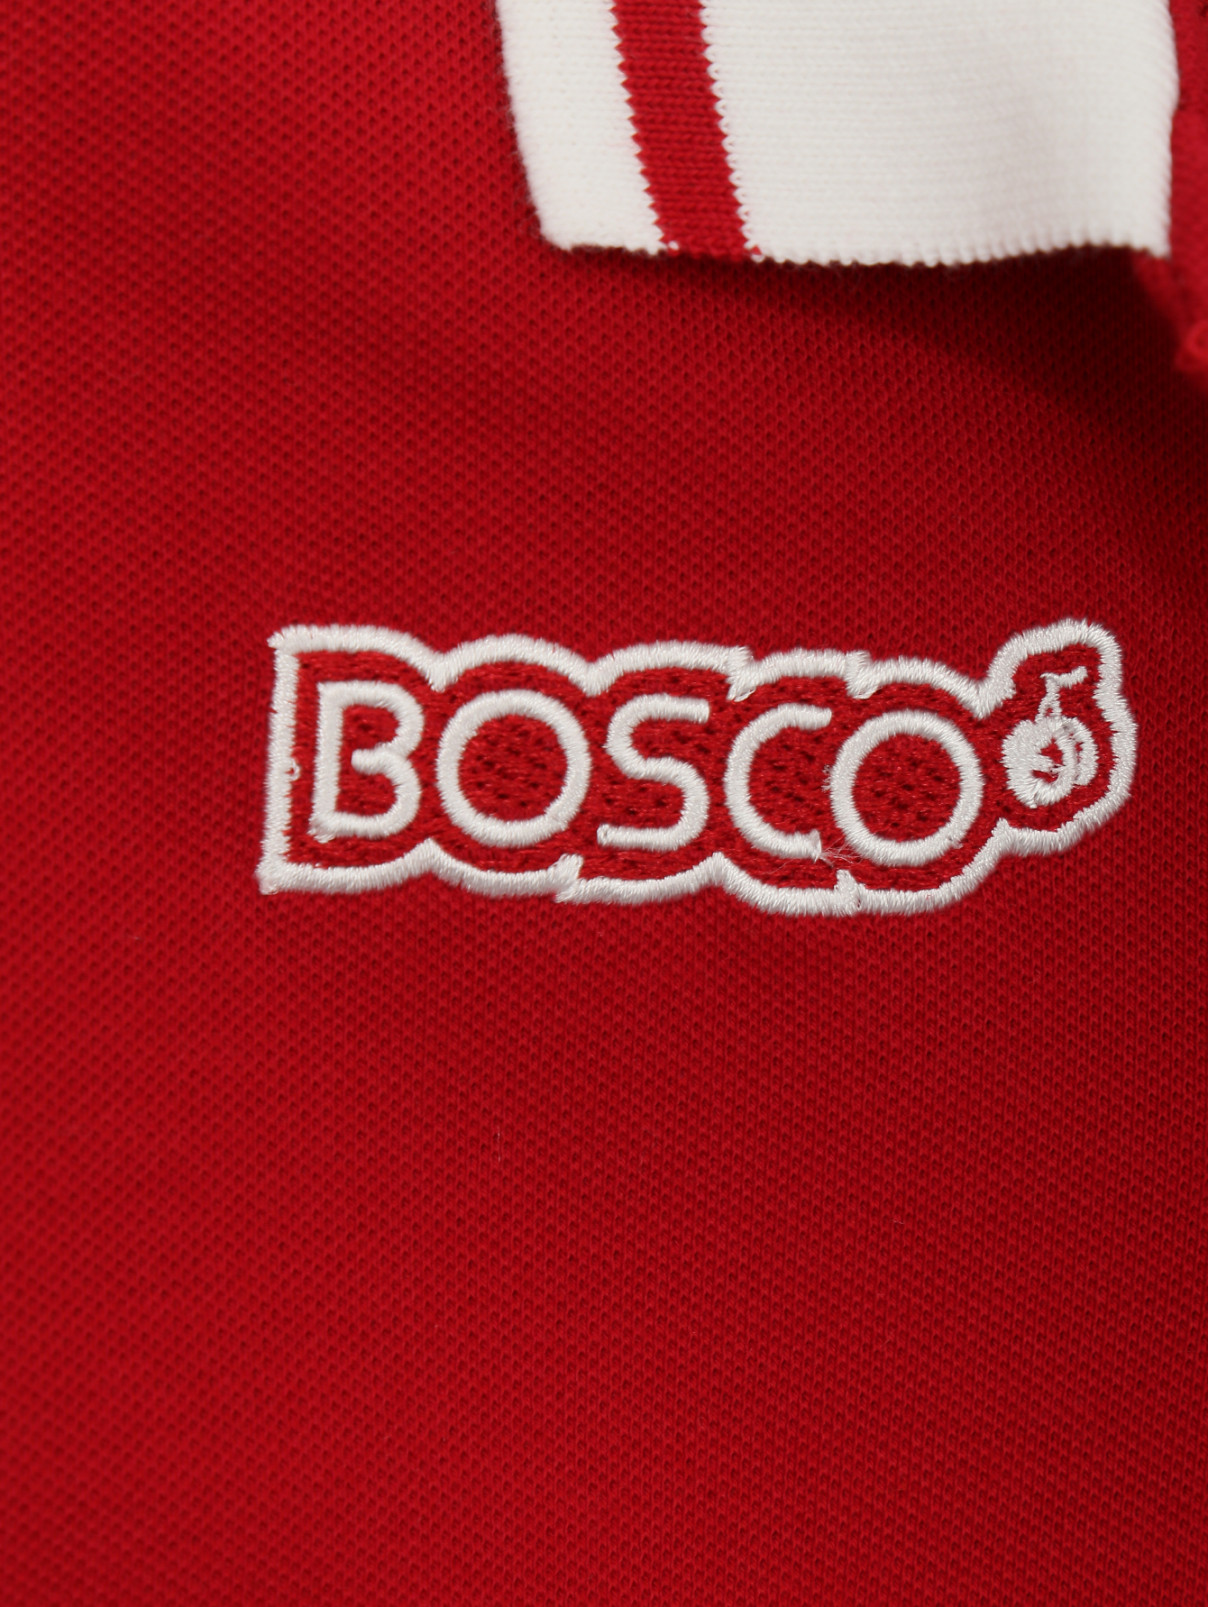 Спортивное платье Боско. Боско Фреш. Платья Боско Fresh. Bosco Fresh лого новый. Боско красная цена